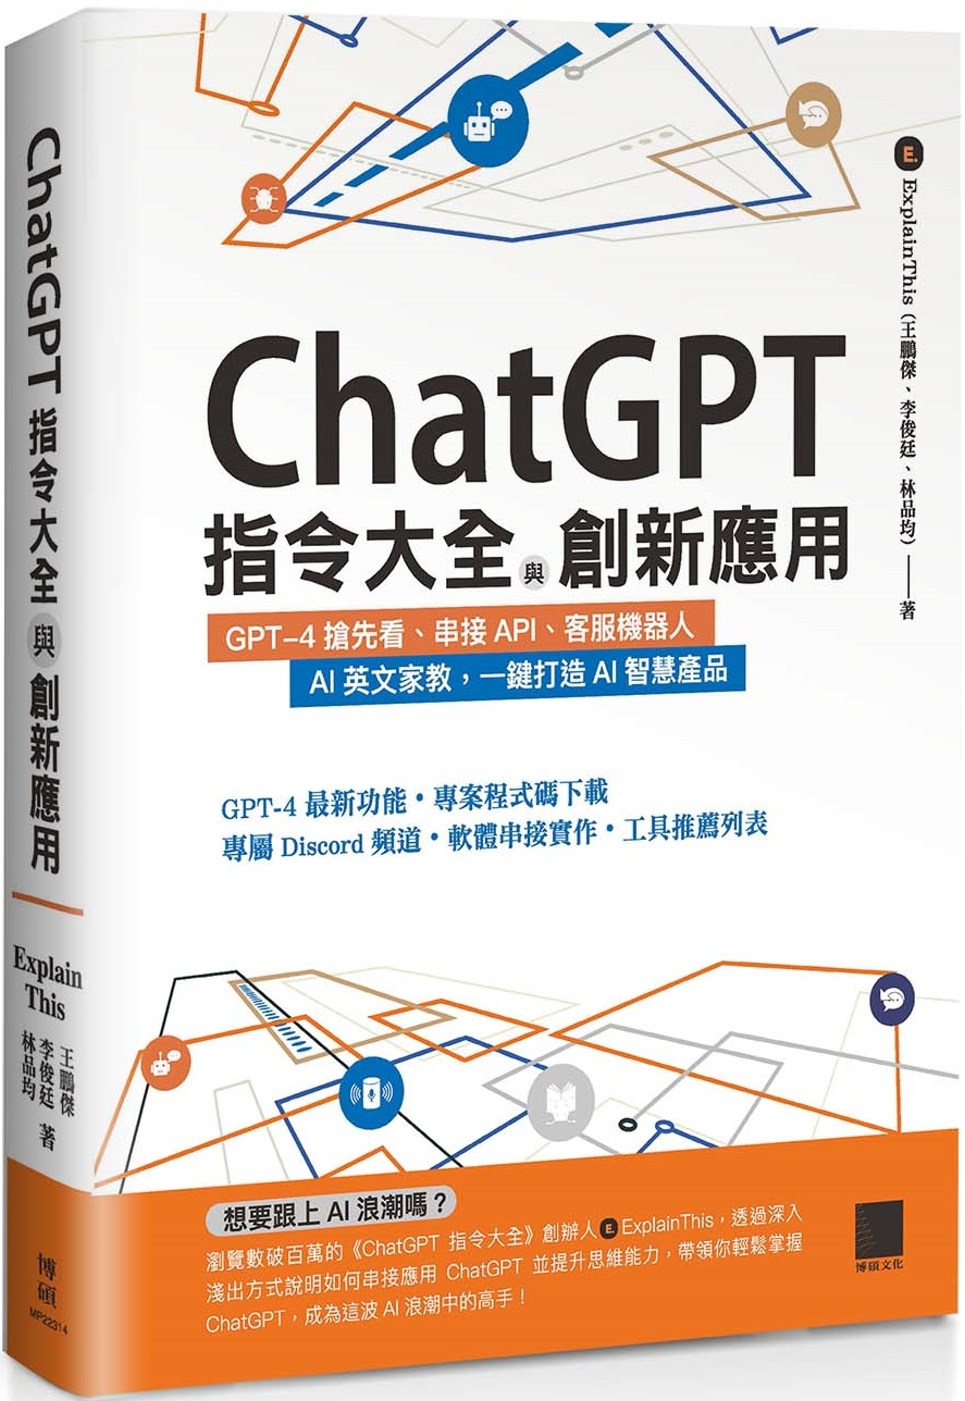 ChatGPT指令大全與創新應...